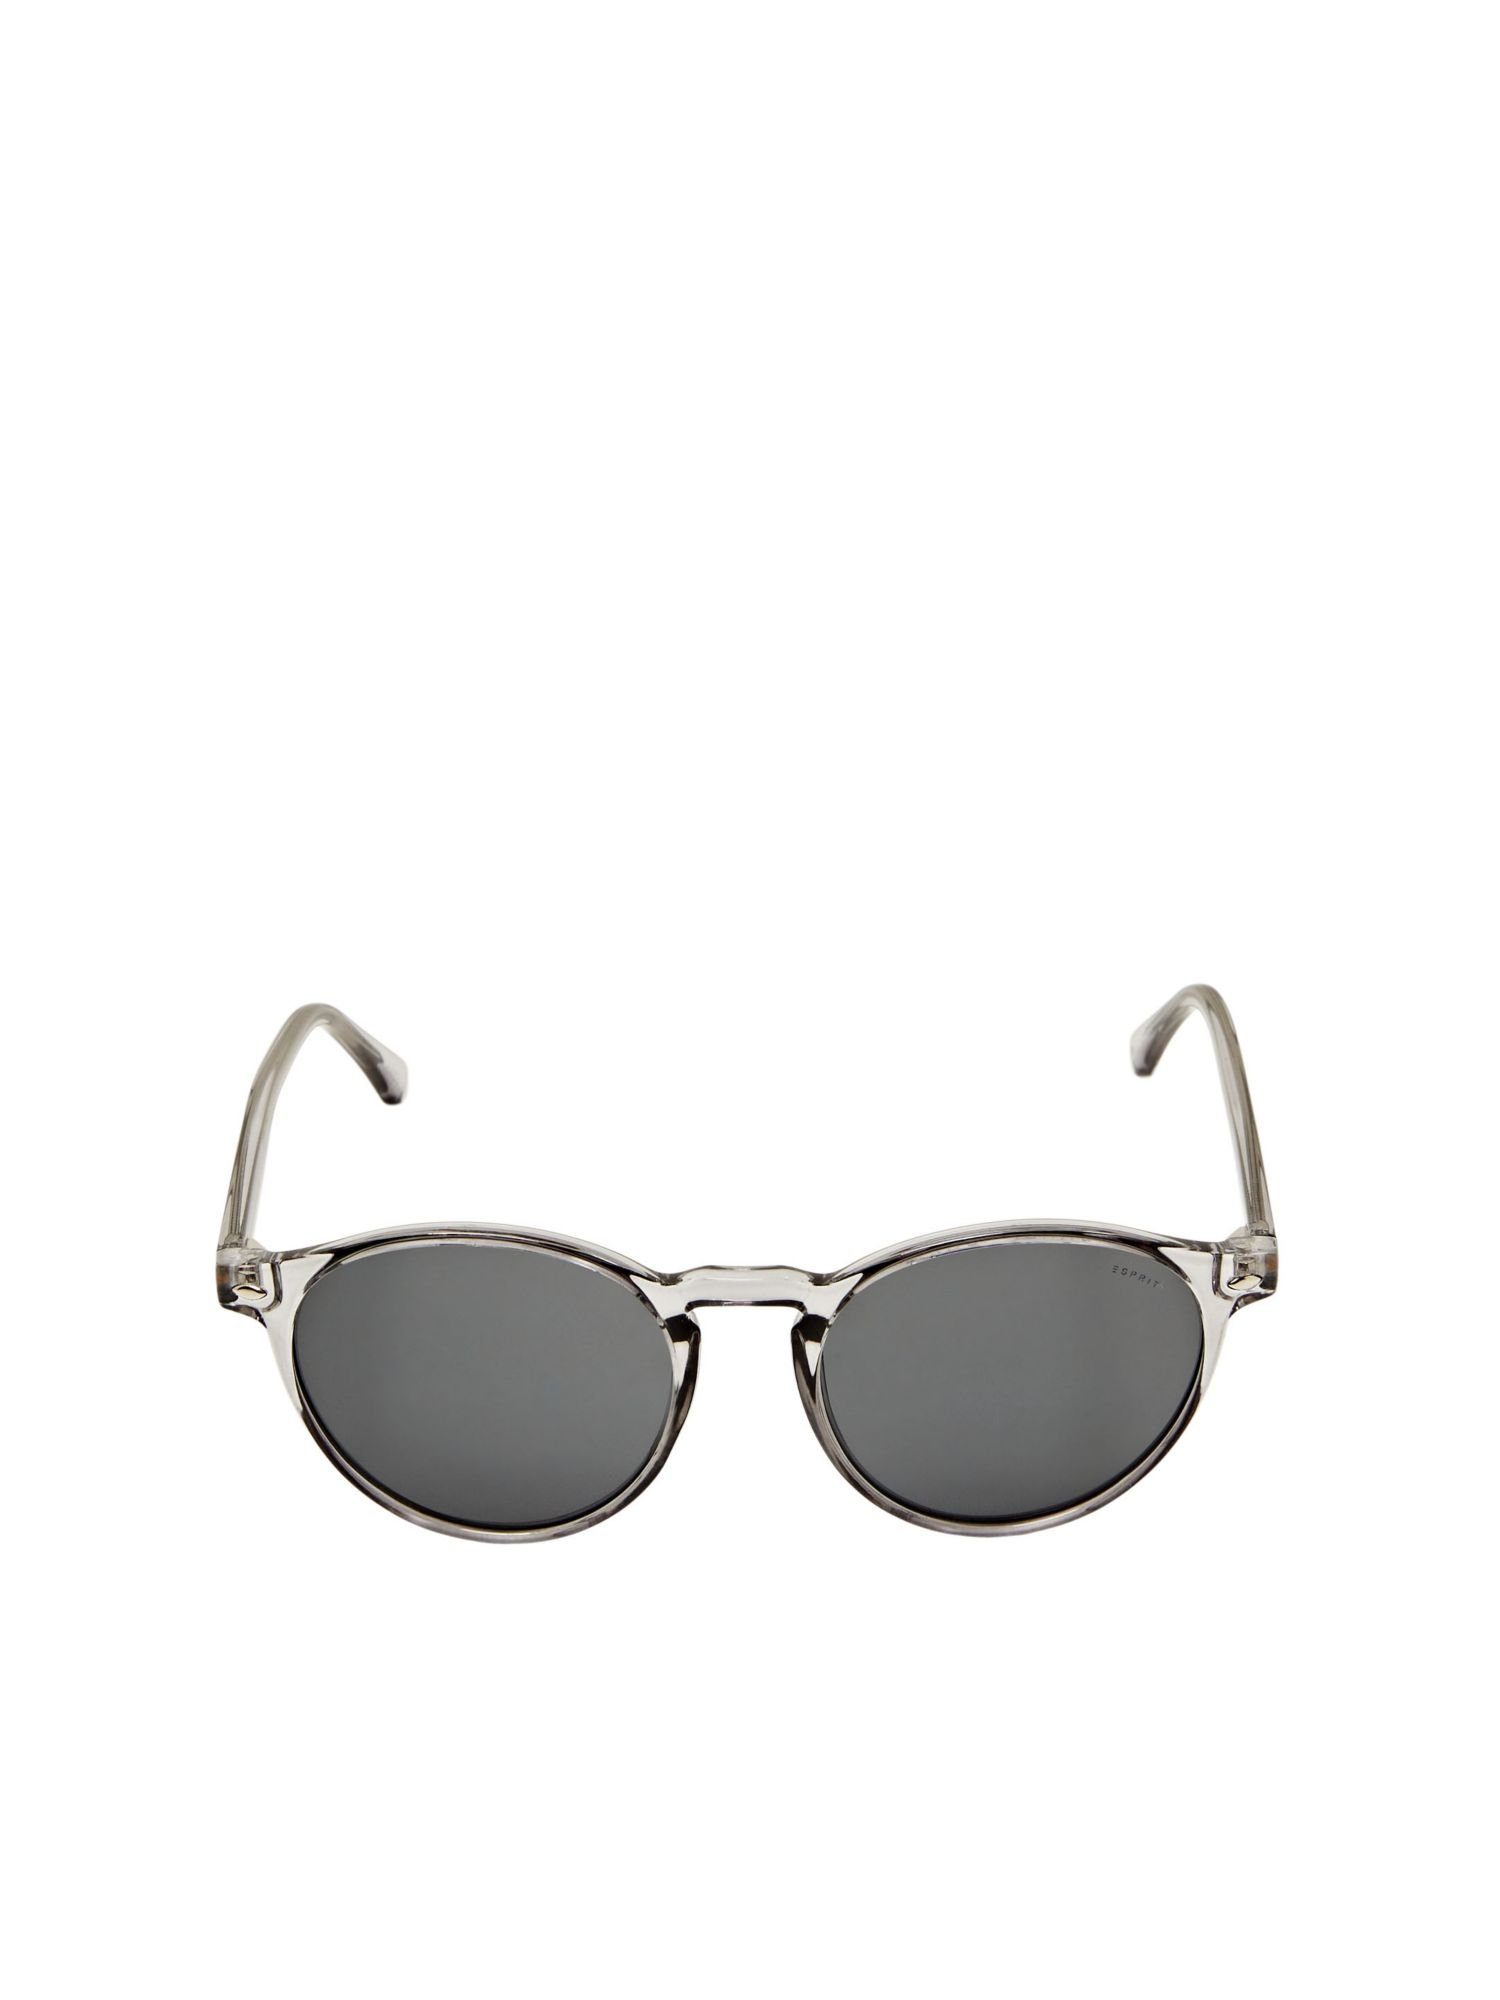 Sonnenbrille Fassung runder Sonnenbrille Esprit transparenter mit